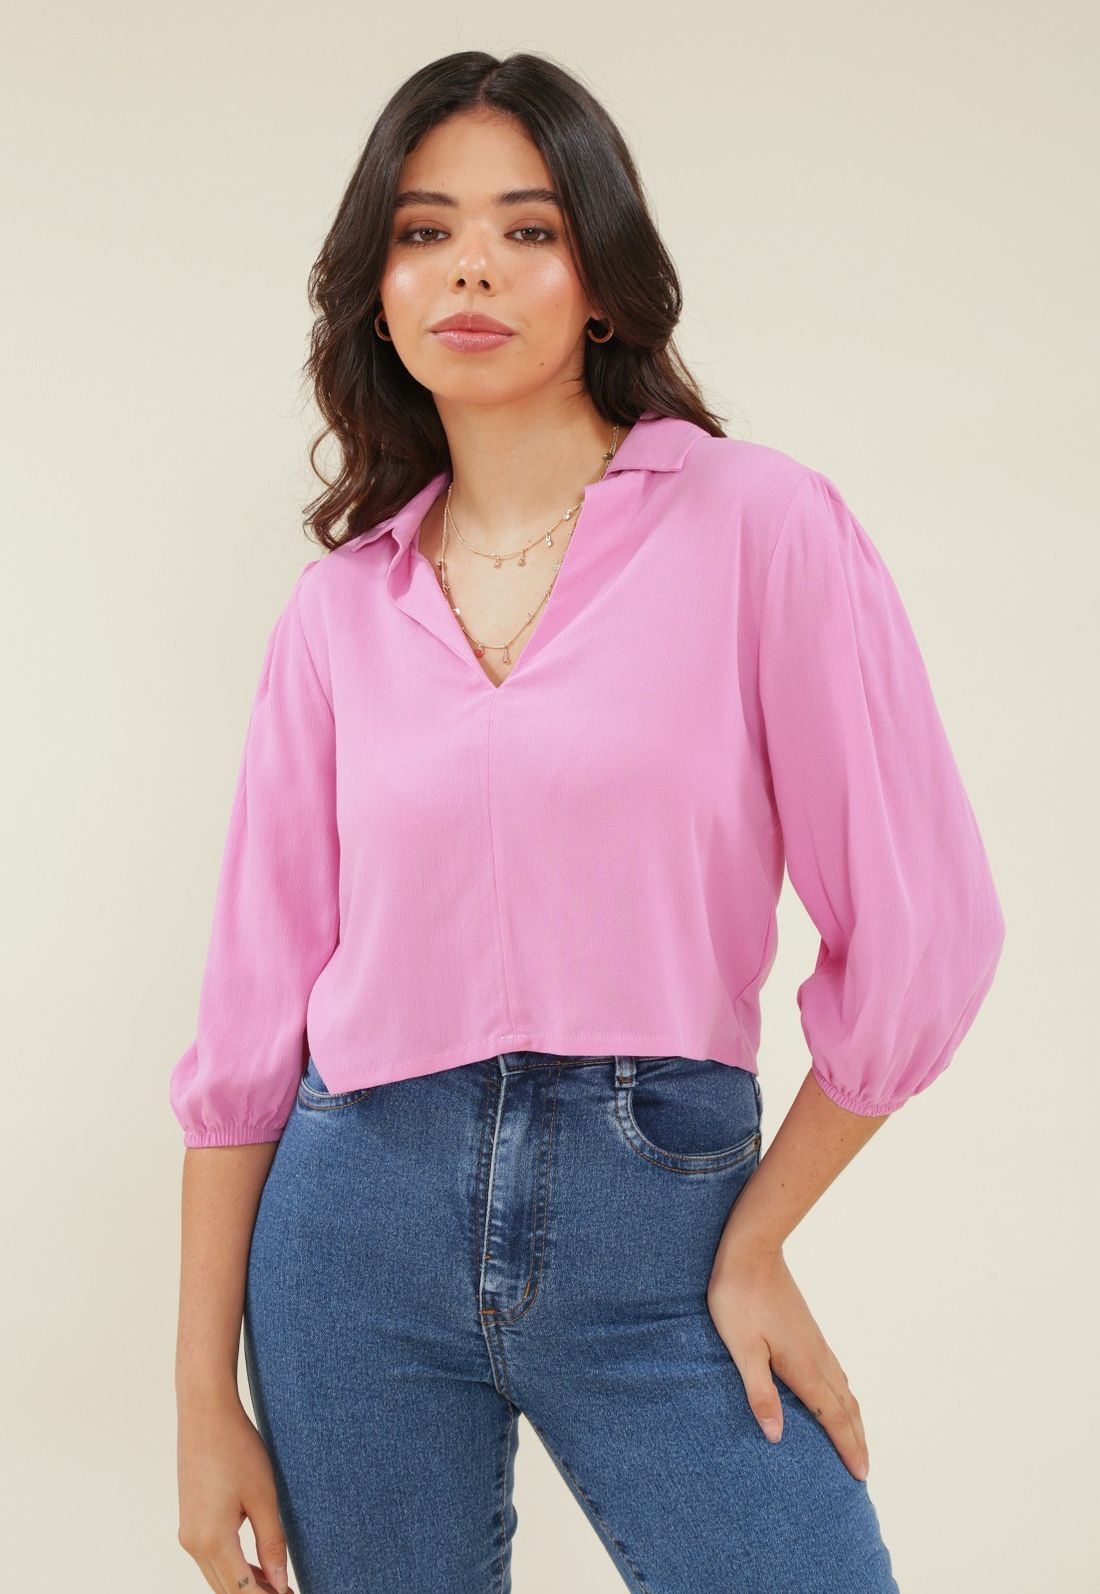 As 7 melhores blusas de crepe femininas para arrasar no look